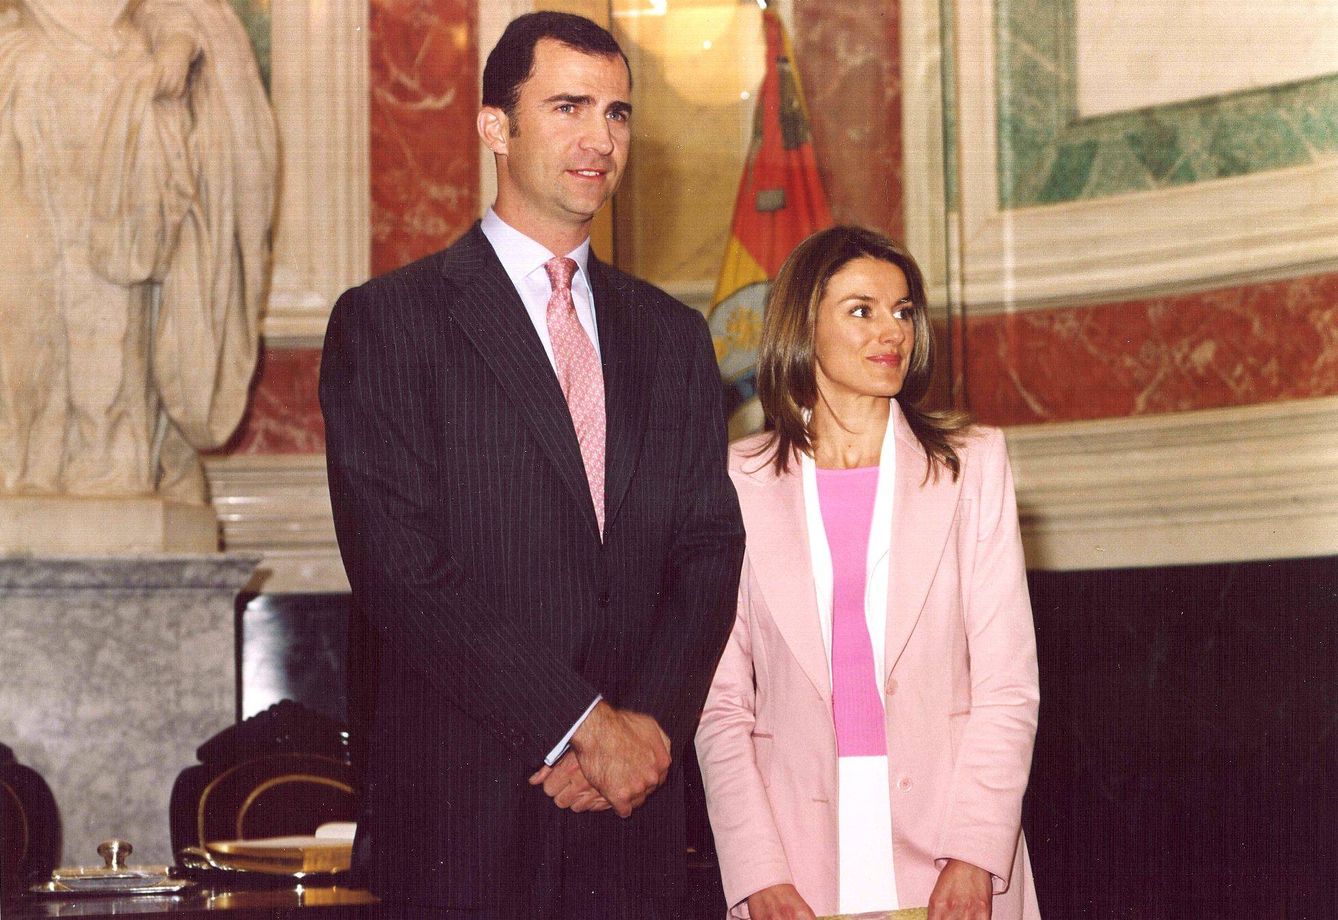 VIII Legislatura, el 3 de mayo de 2004, donde Letizia fue presentada como princesa de Asturias (Congreso de los Diputados)